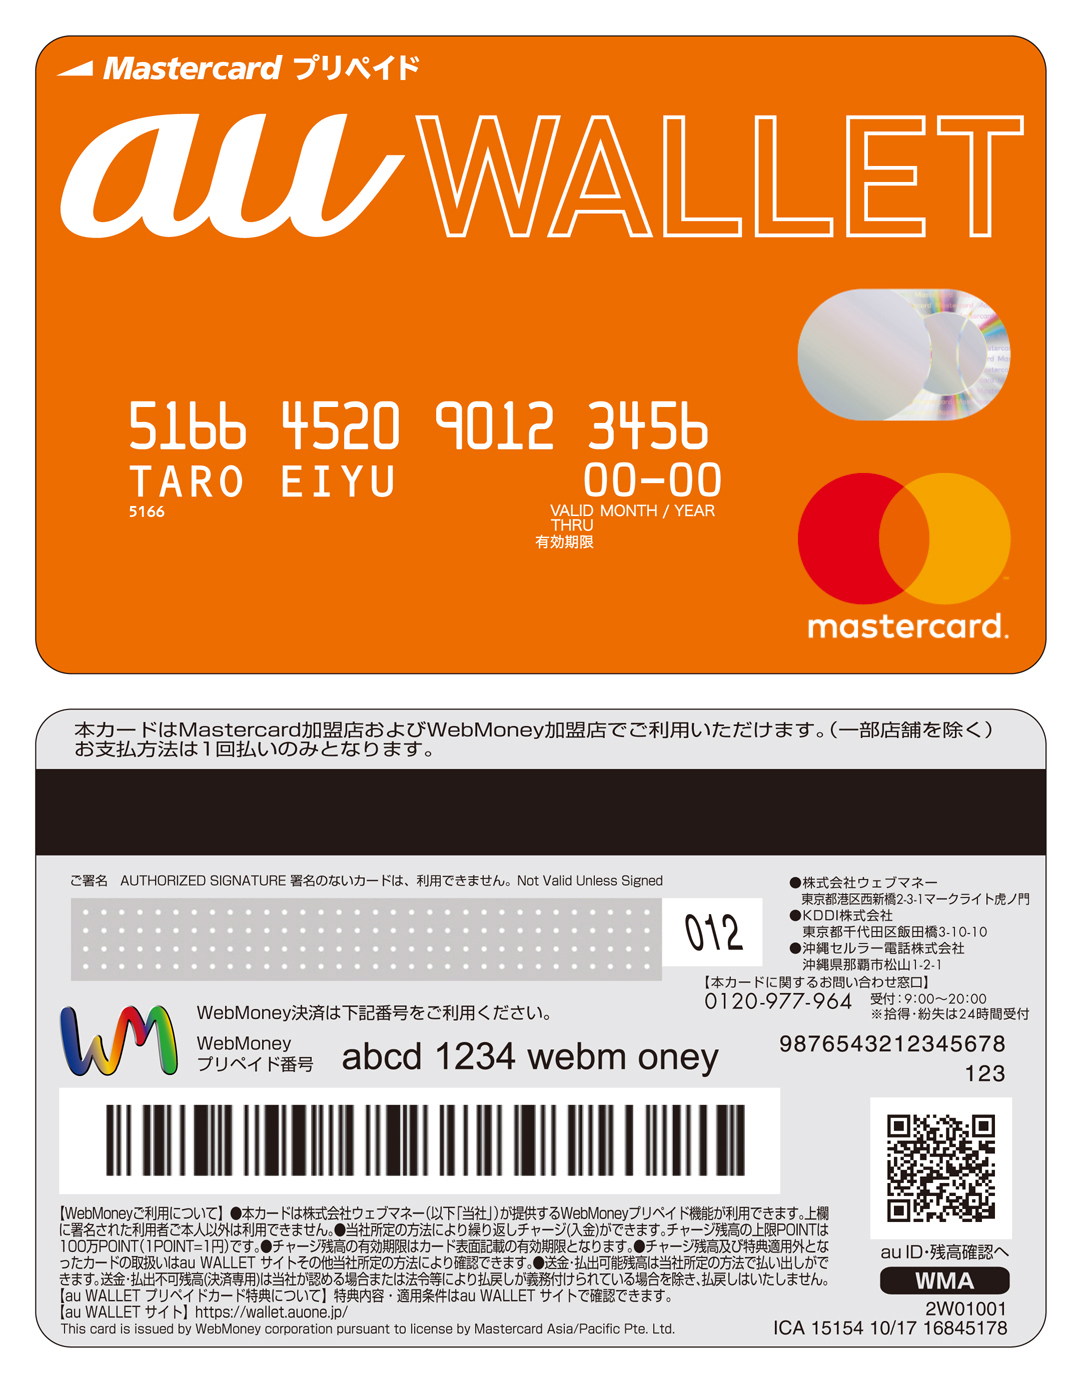 今更ながらau Walletプリペイドカードのプレス用画像があったのねｗ Au Wallet徹底解説